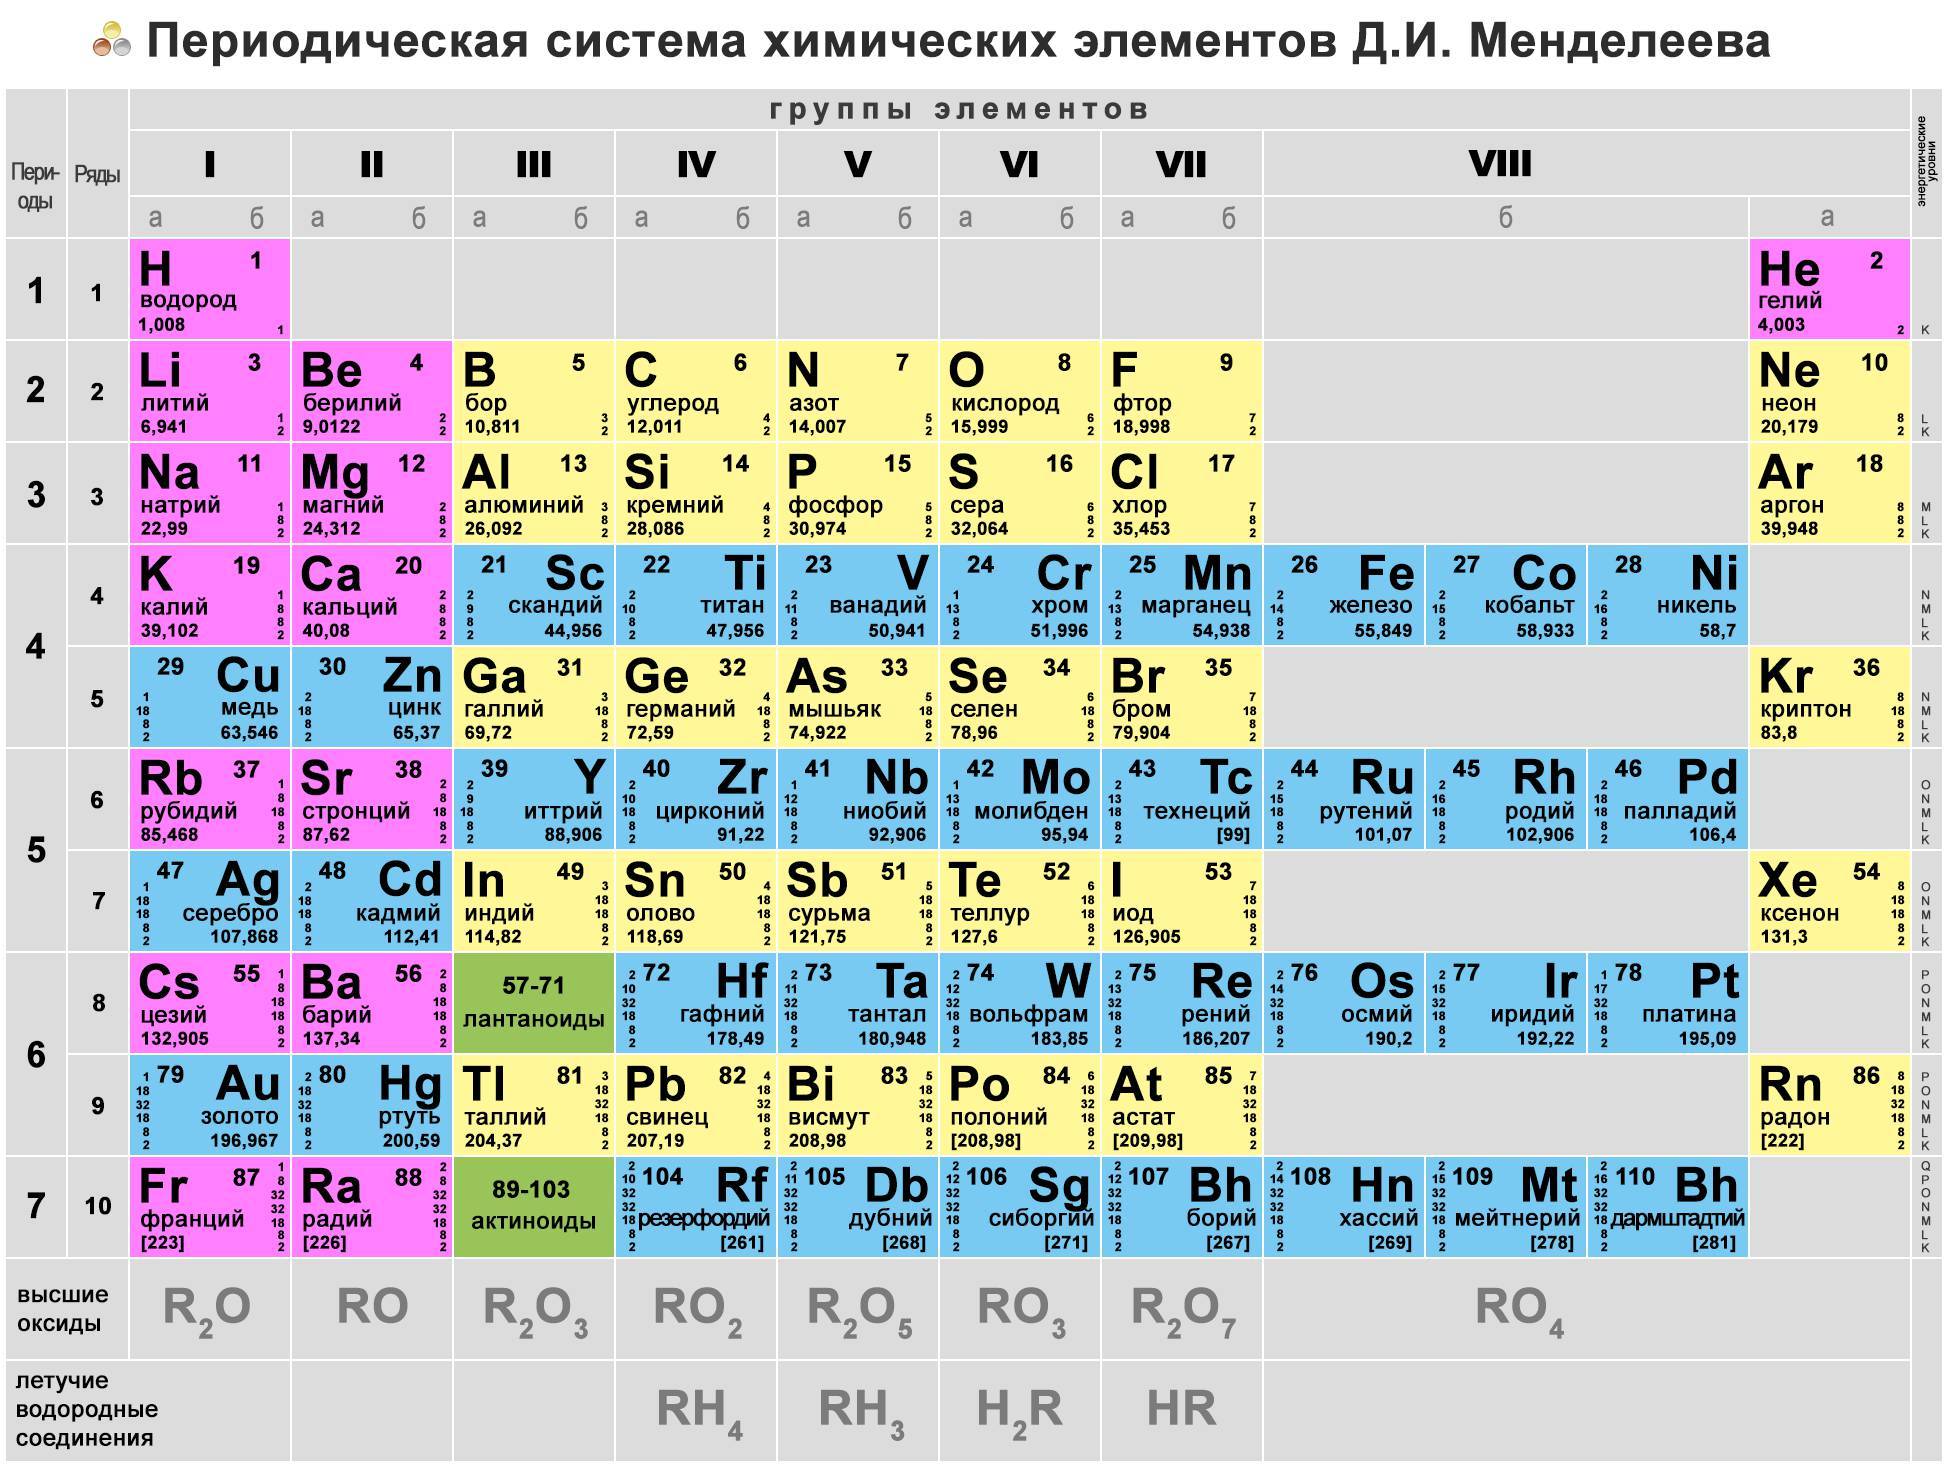 Первичные химические элементы. Химическая периодическая таблица Менделеева. Менделеев периодическая таблица химических элементов. Из чего состоит периодическая таблица Менделеева. Первые 20 элементов таблицы Менделеева.